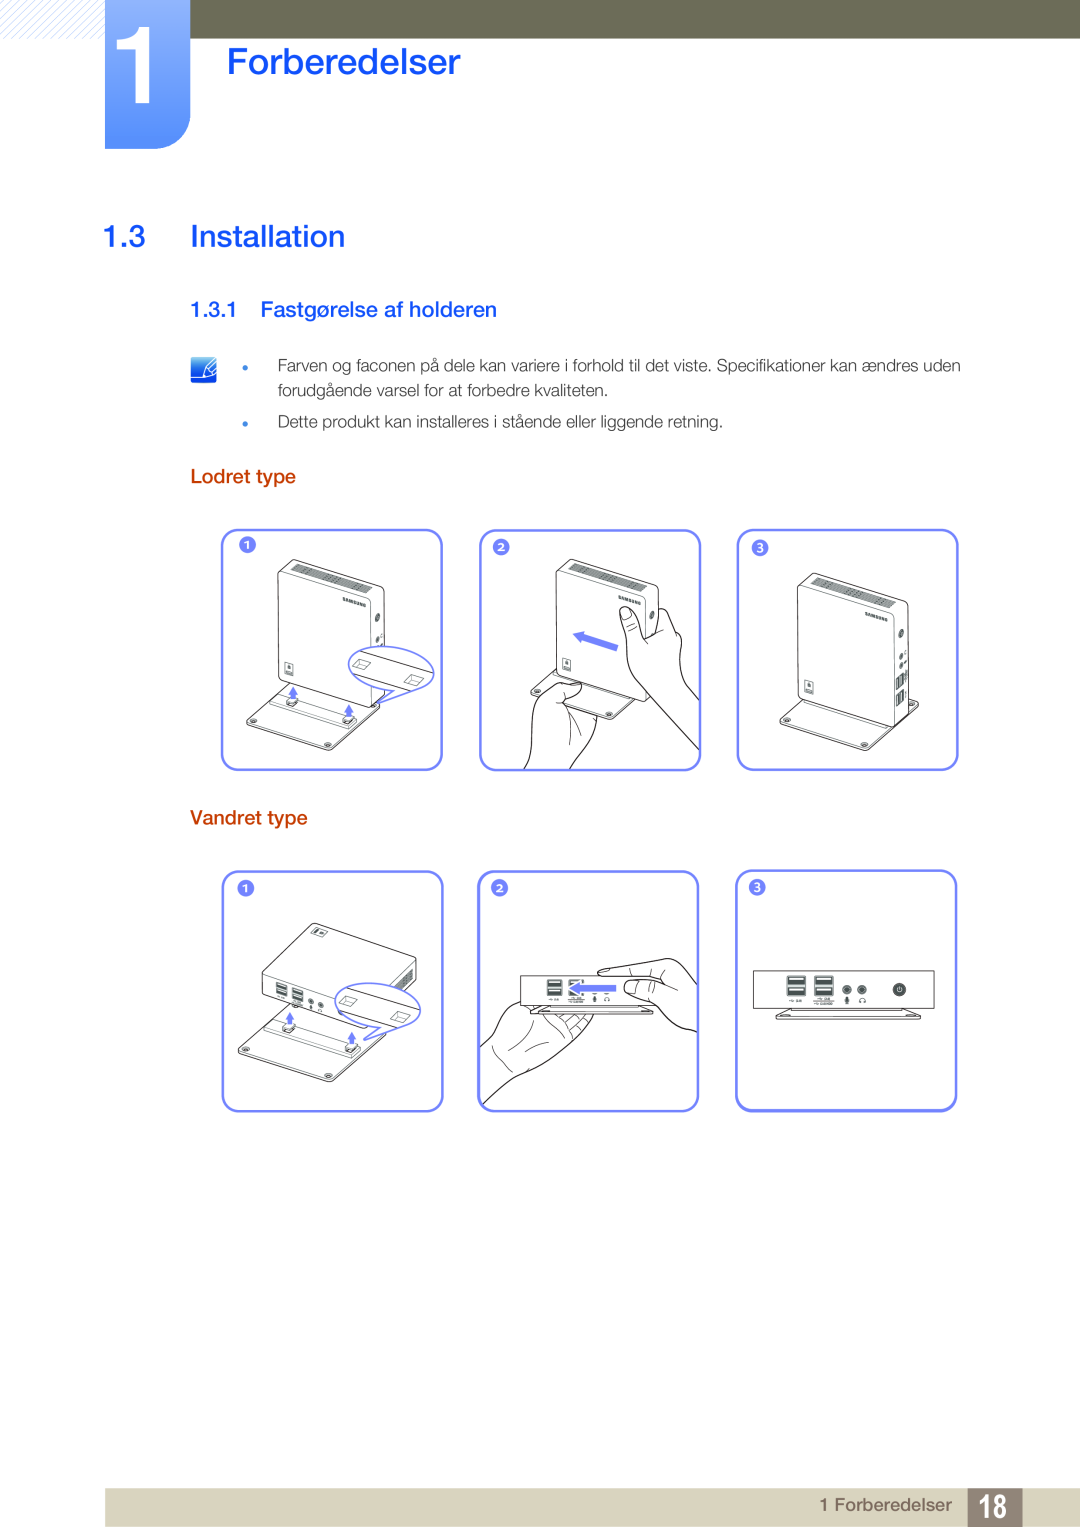 Samsung LF-NXN2N/EN, LF00FNXPFBZXEN manual Installation, Fastgørelse af holderen, Forberedelser, Lodret type Vandret type 